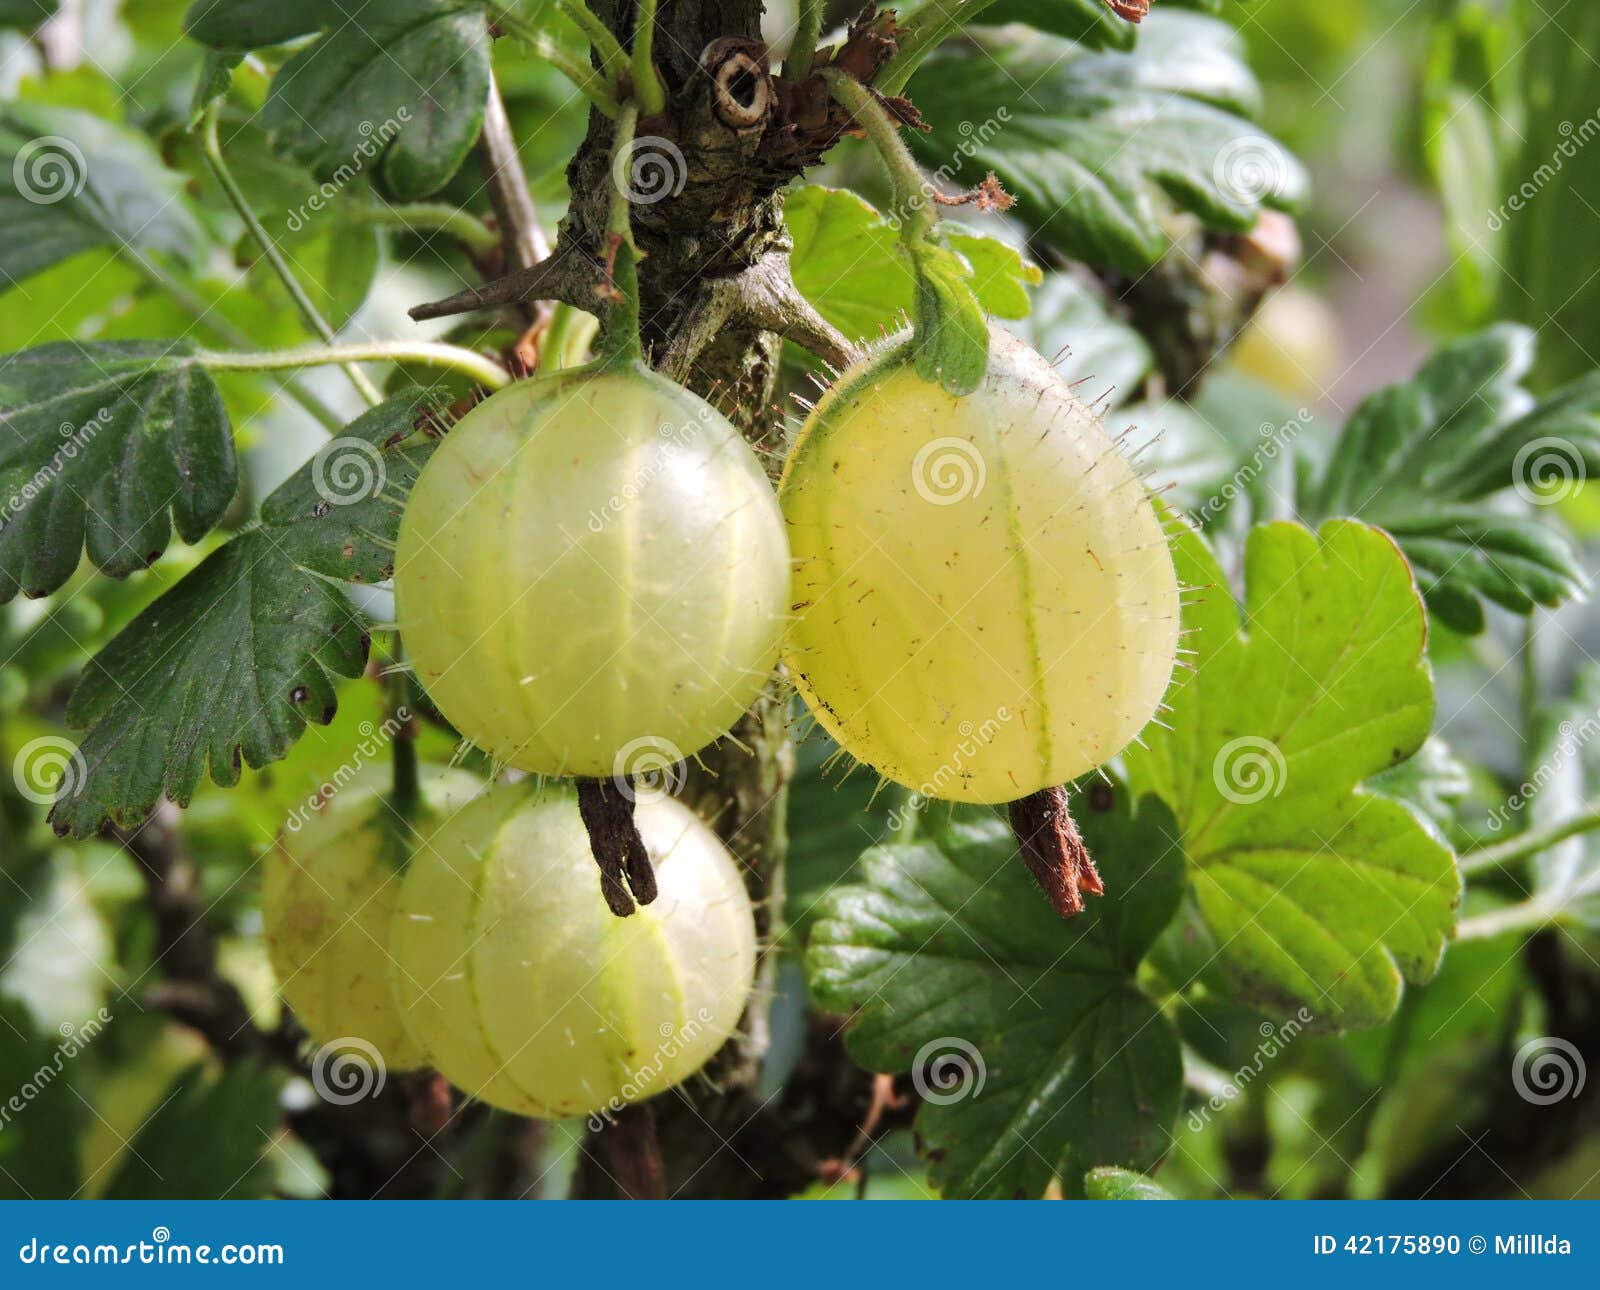 黄色鹅莓 库存图片. 图片 包括有 新鲜, 发狂, 果子, 黄色, 没人, 绿色, 夏天, 庭院, 鹅莓 - 52840087